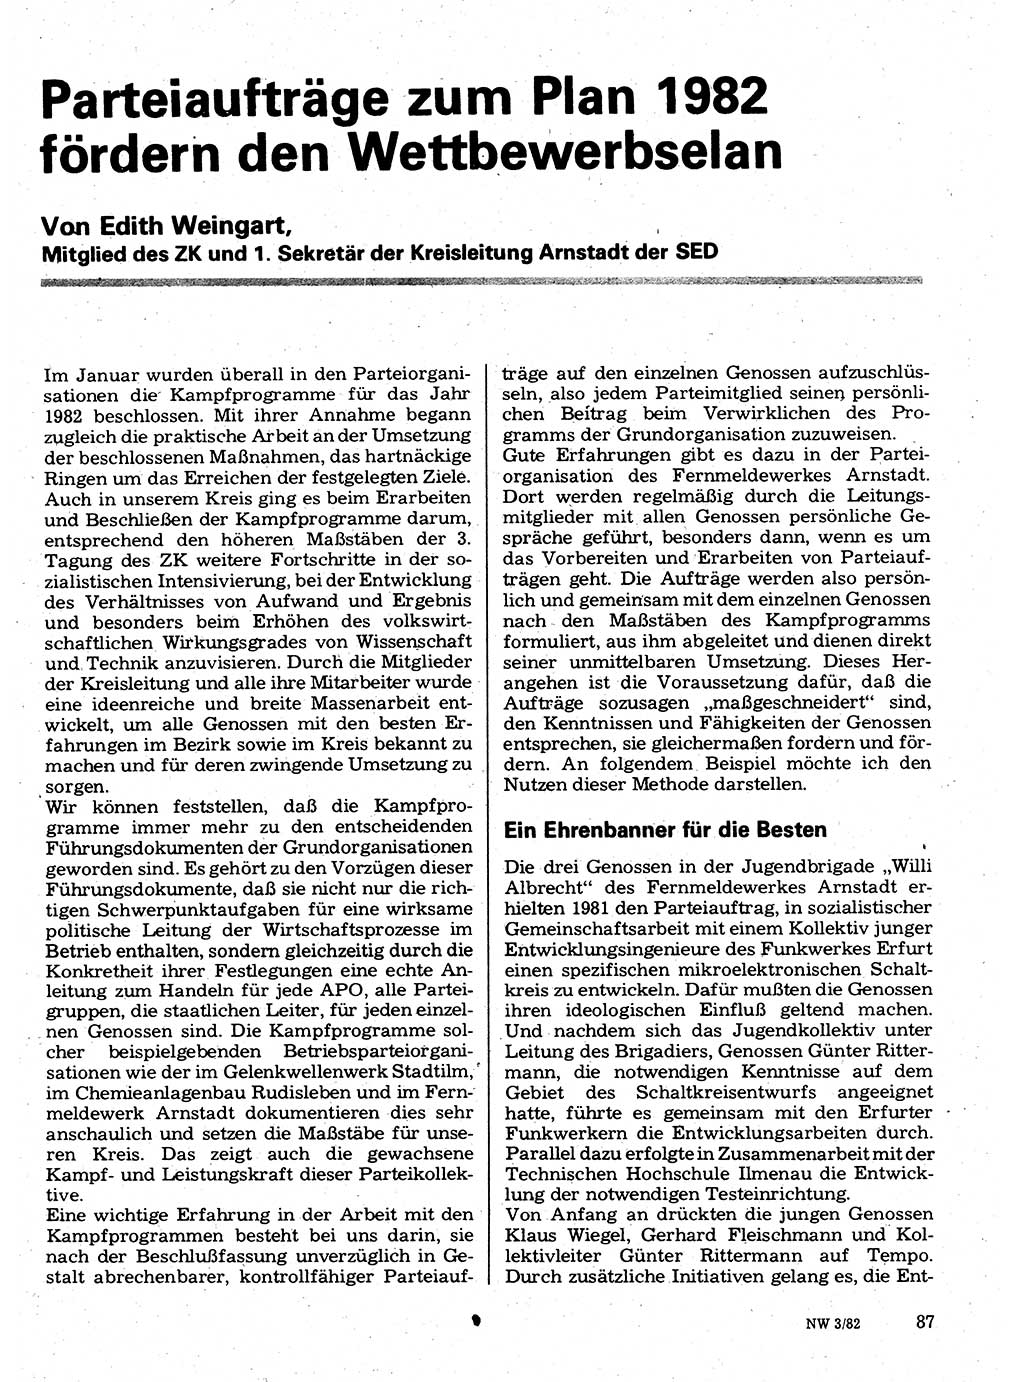 Neuer Weg (NW), Organ des Zentralkomitees (ZK) der SED (Sozialistische Einheitspartei Deutschlands) für Fragen des Parteilebens, 37. Jahrgang [Deutsche Demokratische Republik (DDR)] 1982, Seite 87 (NW ZK SED DDR 1982, S. 87)